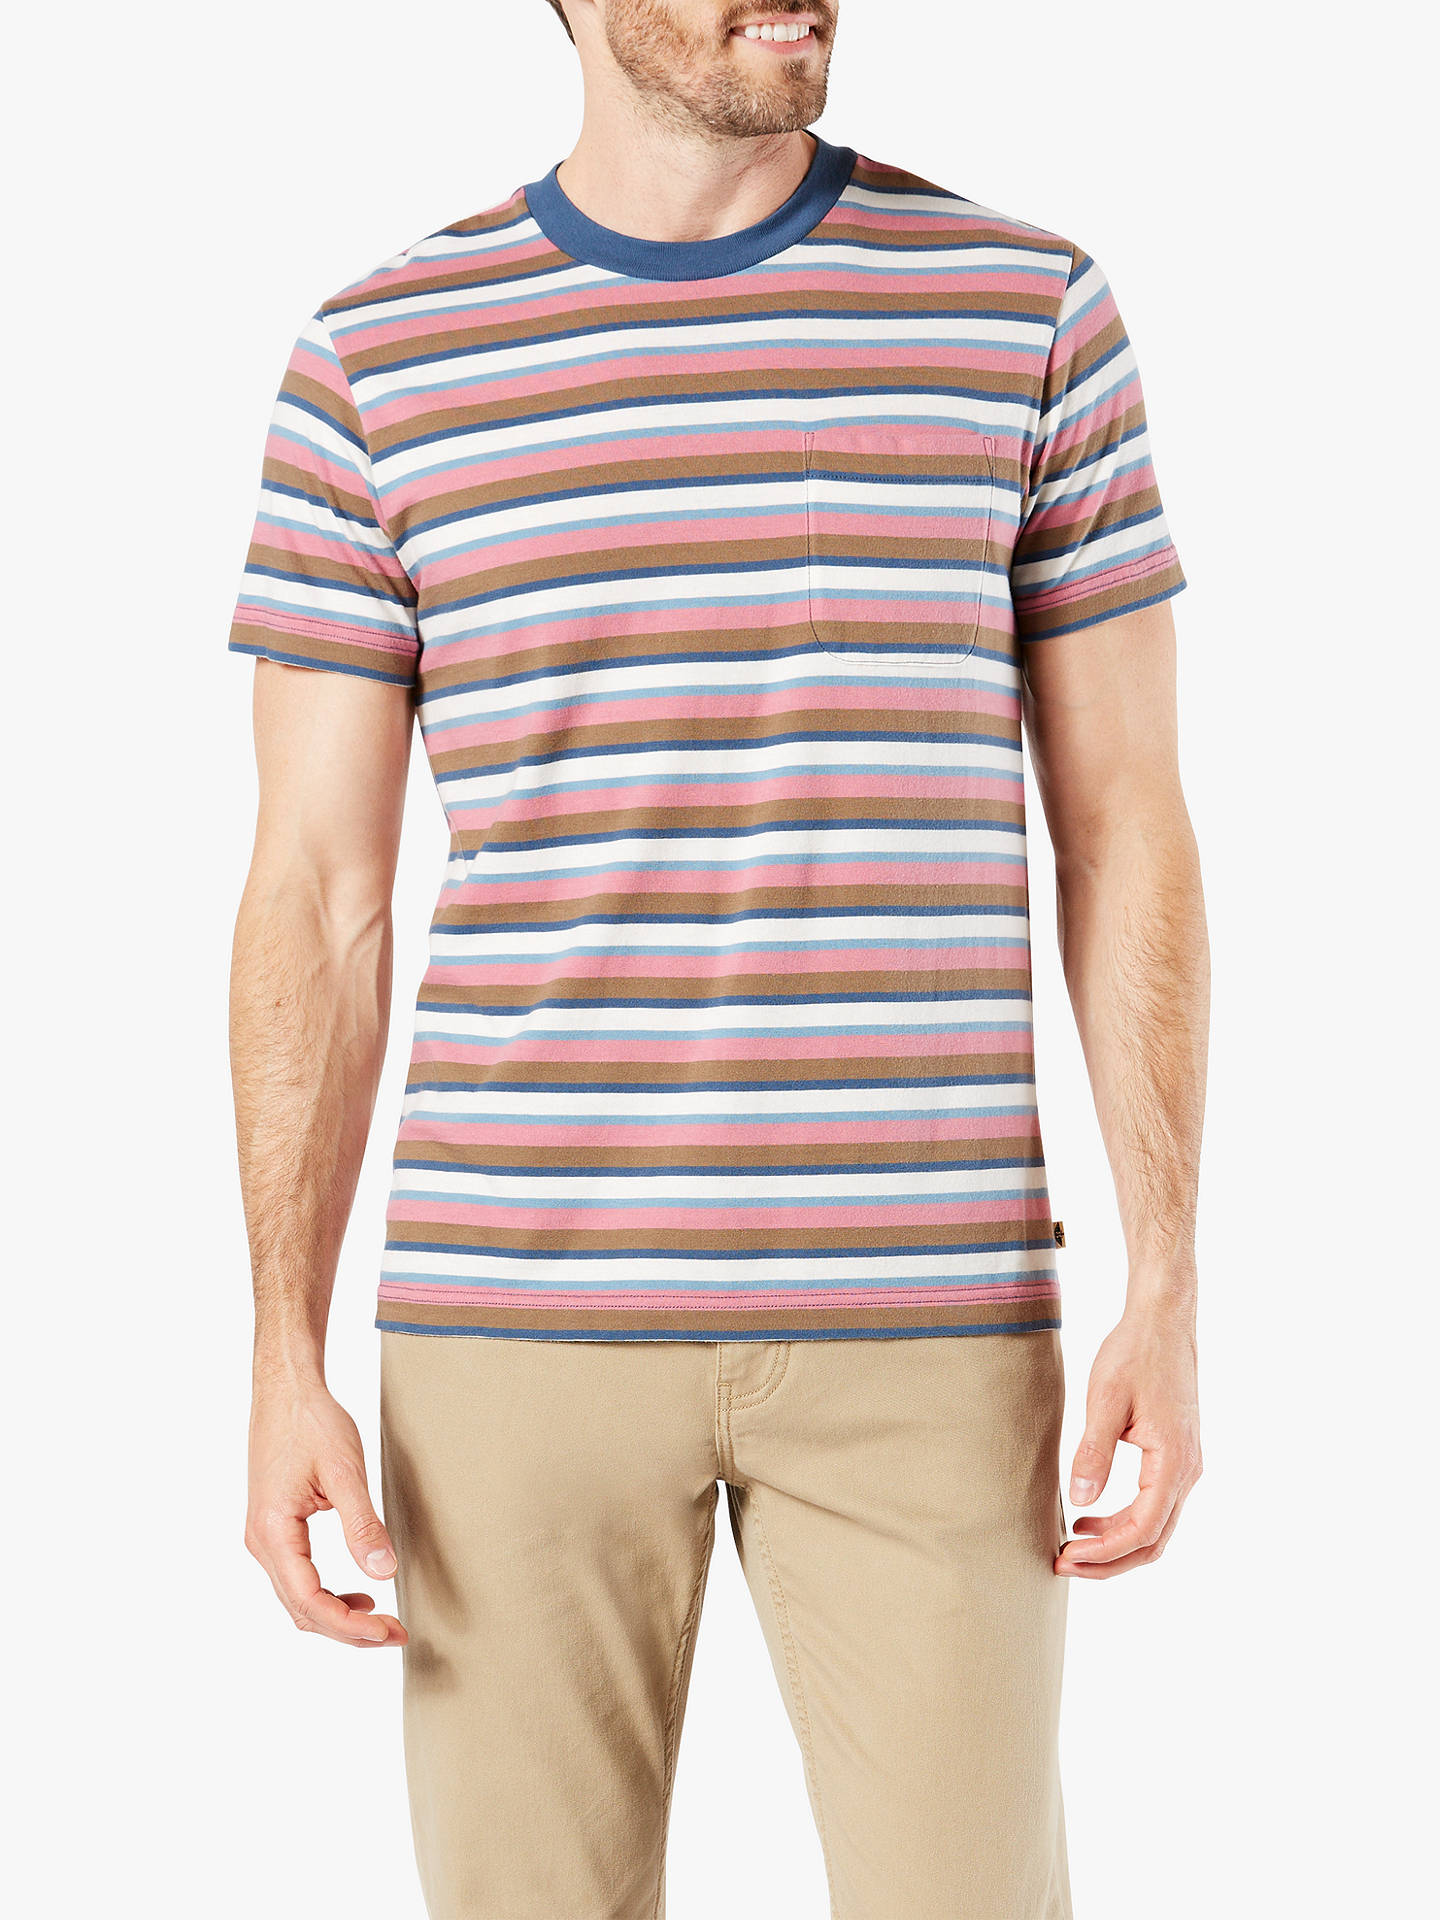 Dockers Pocket Stripe T-Shirt at John Lewis & Partners